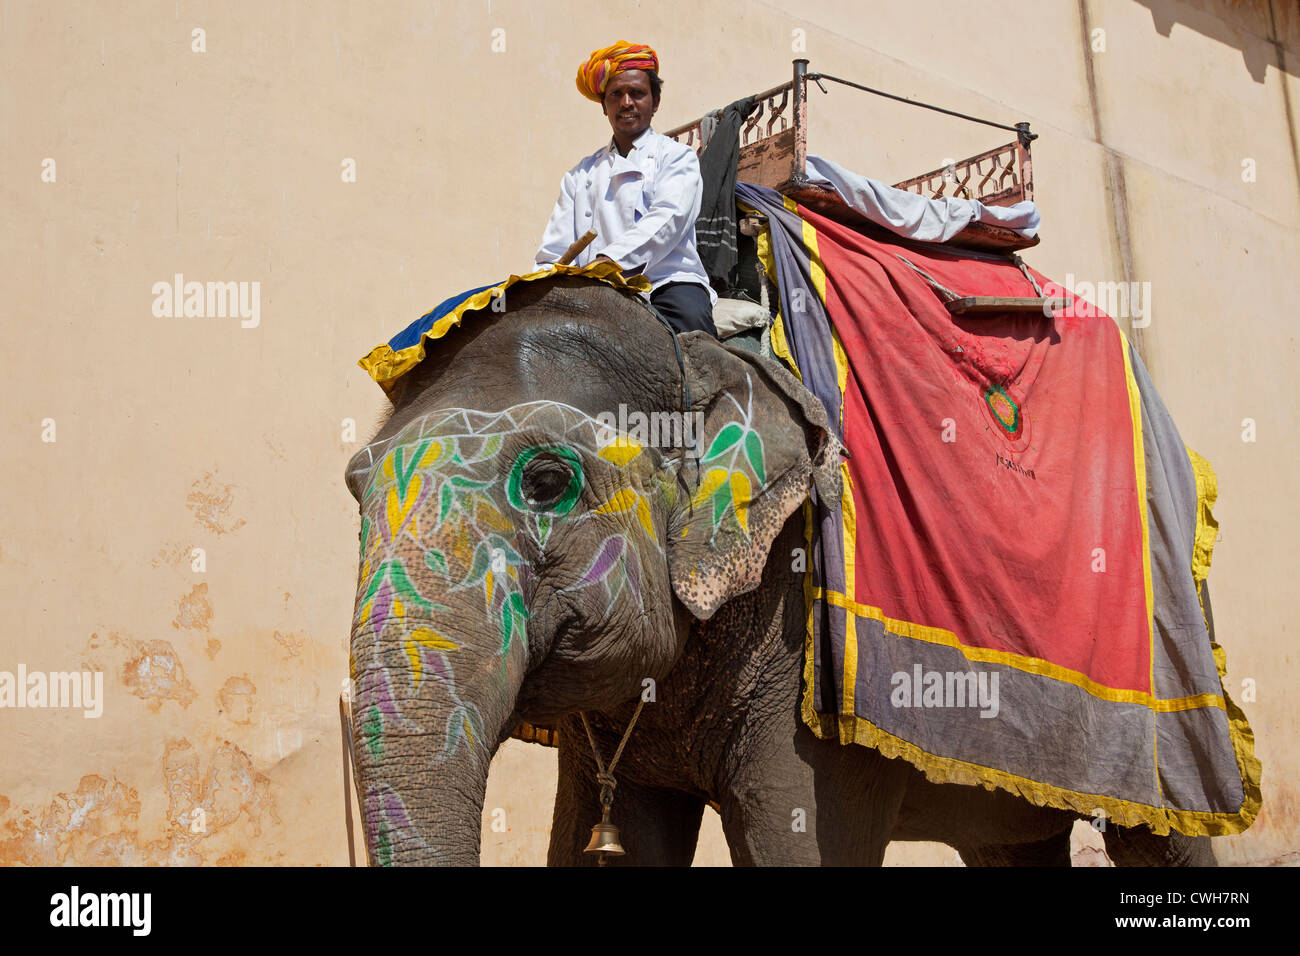 Mahout caballo decorado elefante indio para transportar turistas al Fuerte Amer / Fuerte Amber, cerca de Jaipur, Rajasthan, India Foto de stock